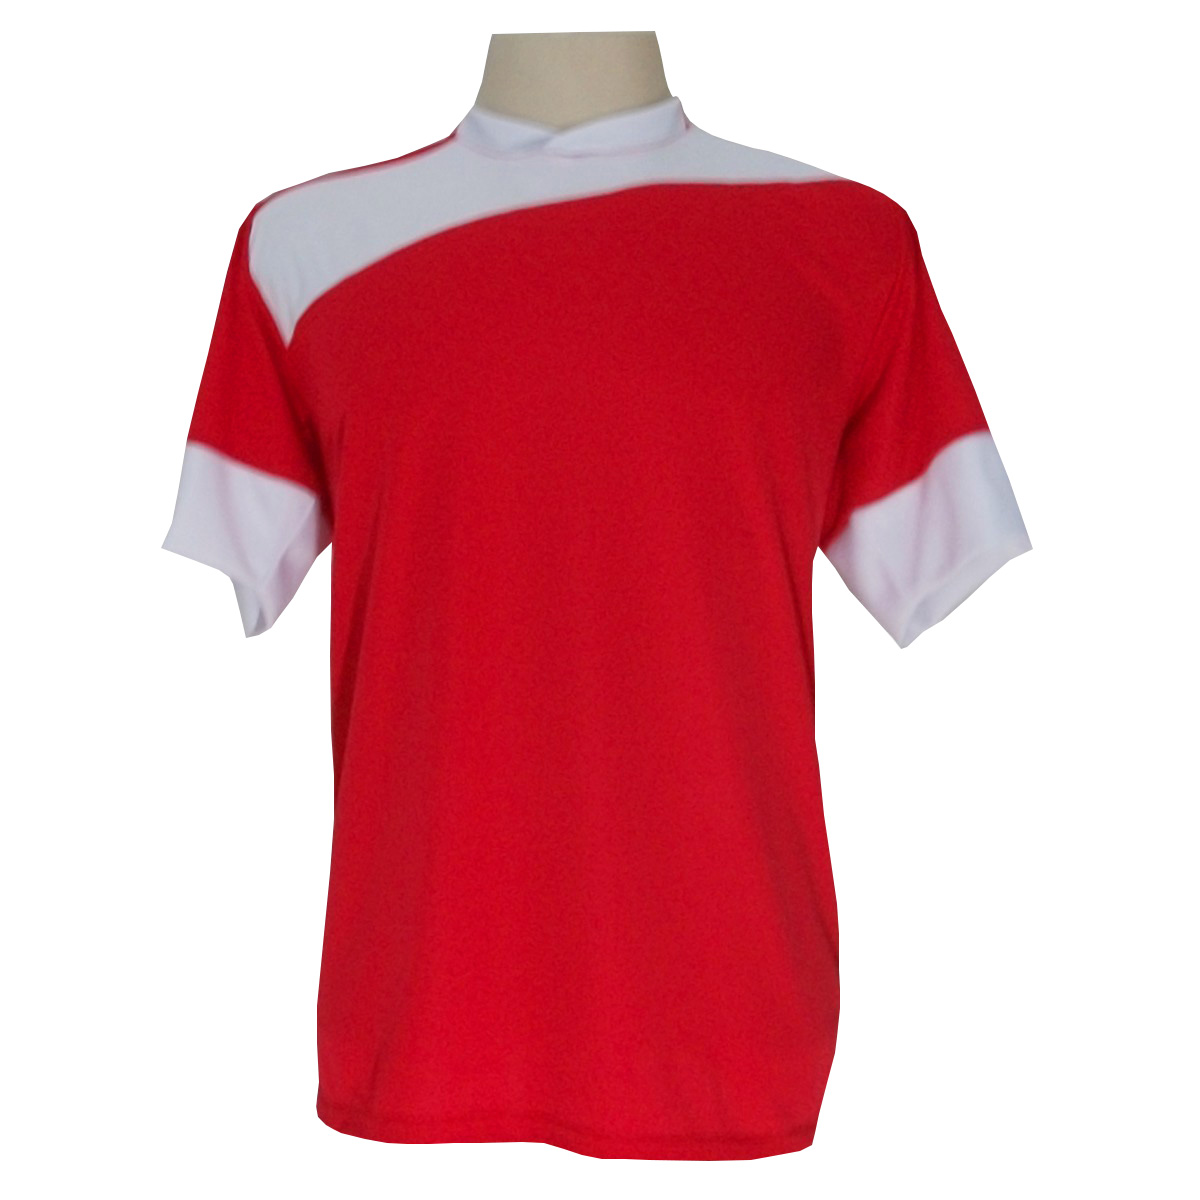 Uniforme Esportivo com 14 camisas modelo Sporting Vermelho/Branco + 14 calções modelo Madrid Branco + Brindes